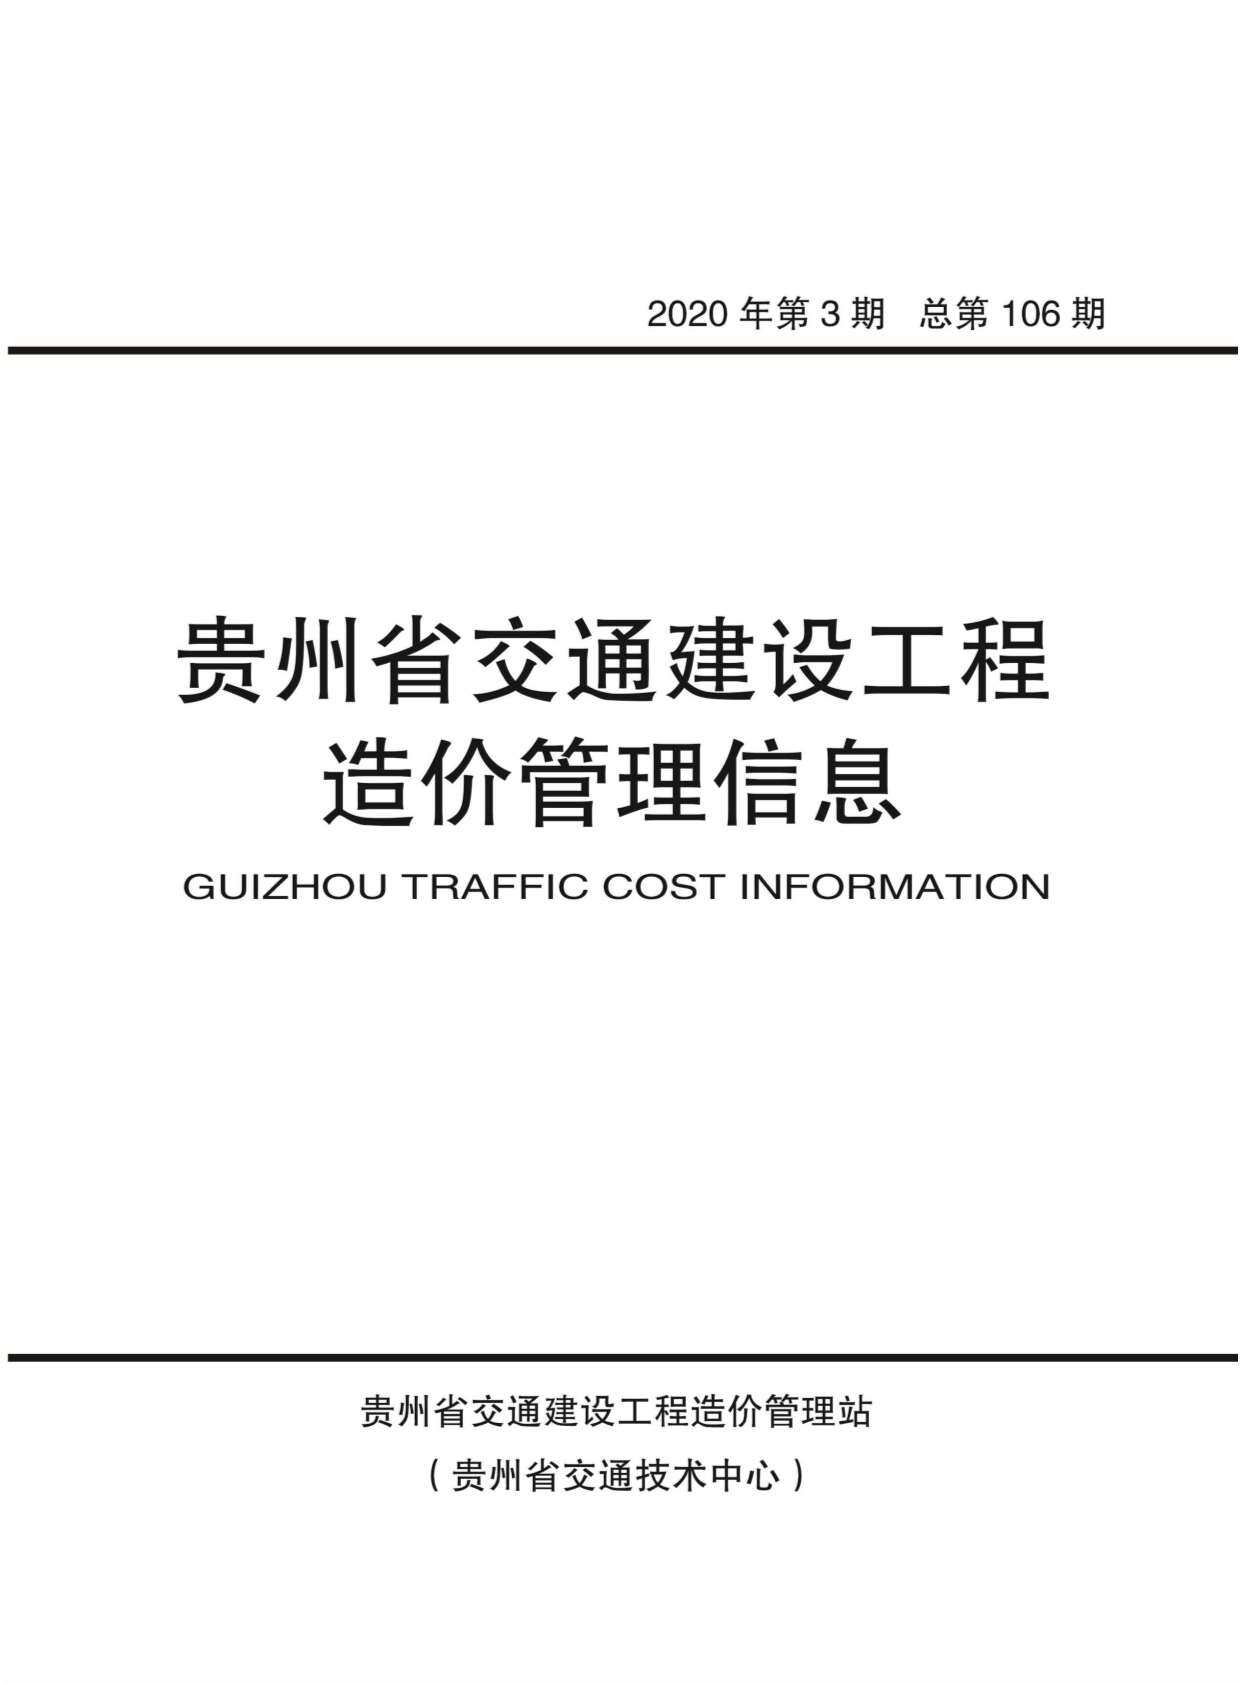 贵州省2020年3月交通工程造价信息期刊